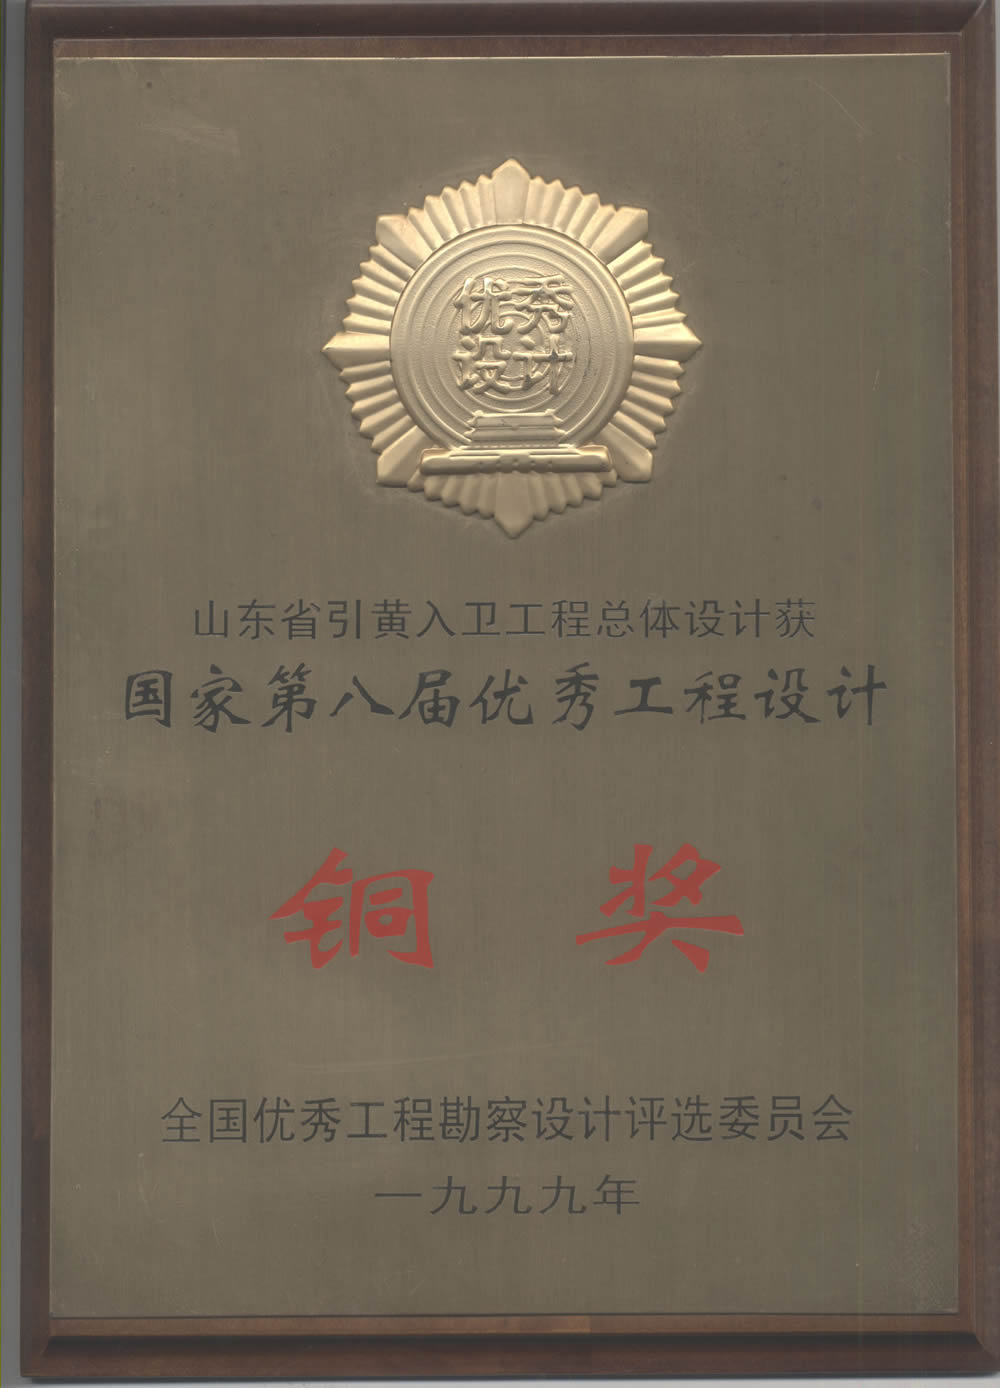 山东省引黄入卫工程总体设计-1999全国优秀工程设计铜奖